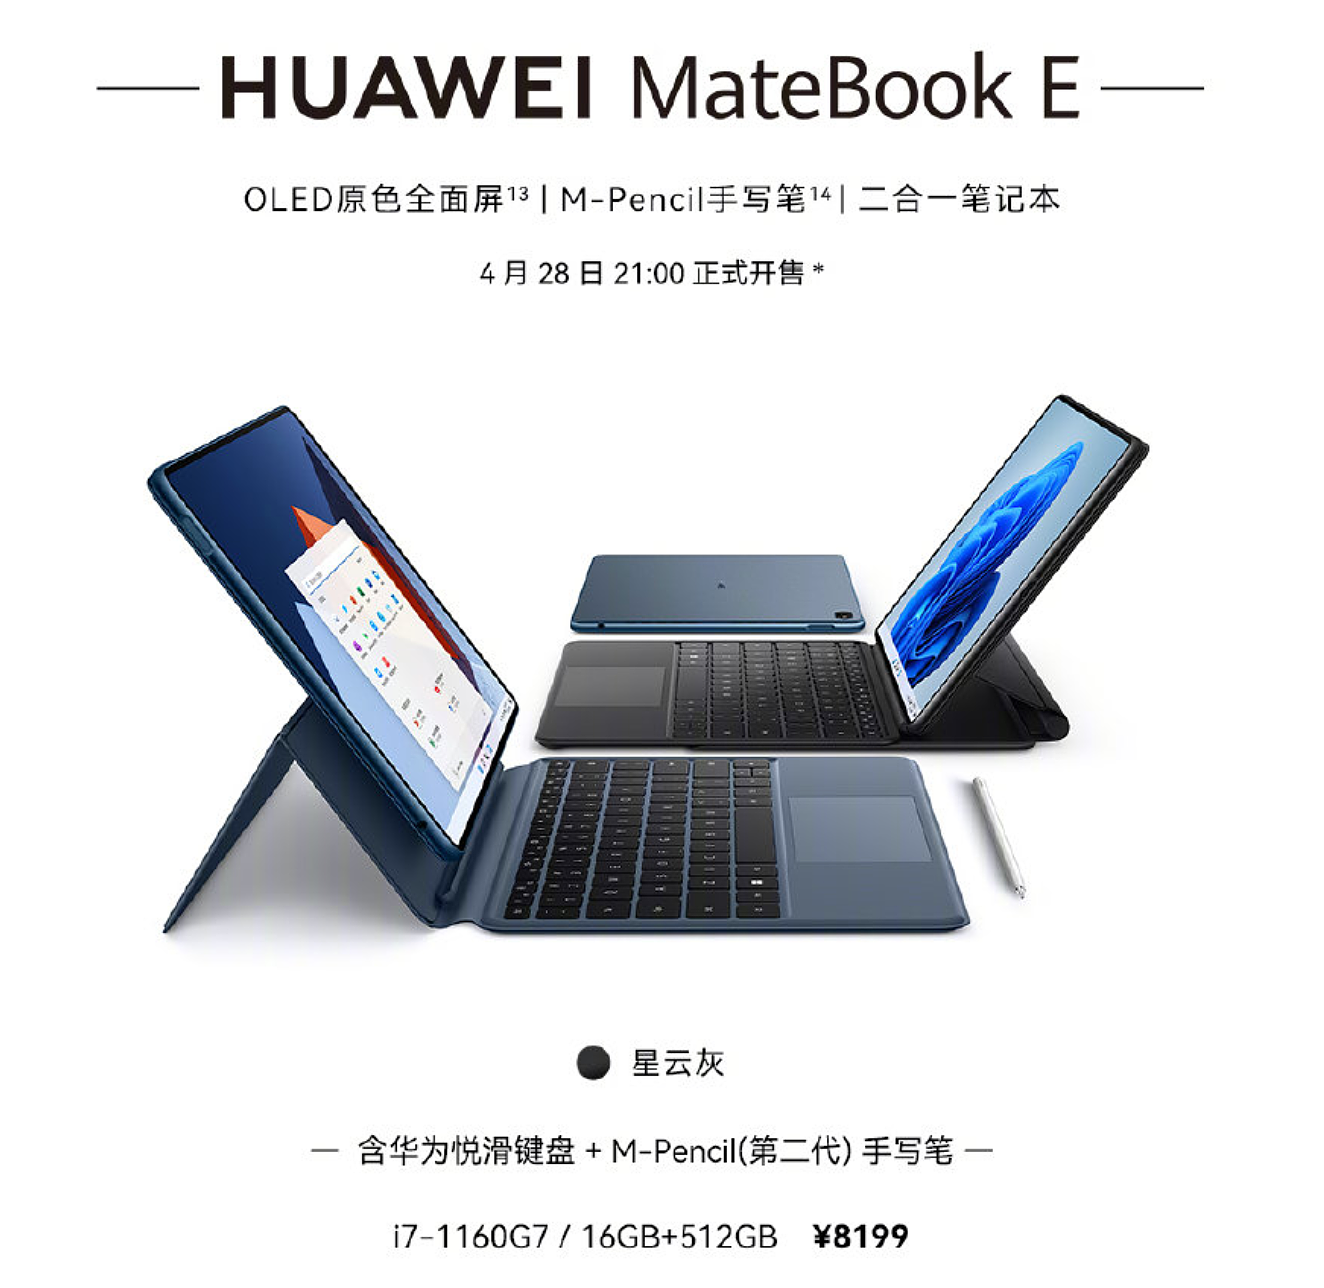 8199 元，华为推出 MateBook E 悦滑键盘 + M-Pencil 套装：i7-1160G7 + 16GB 内存 - 1